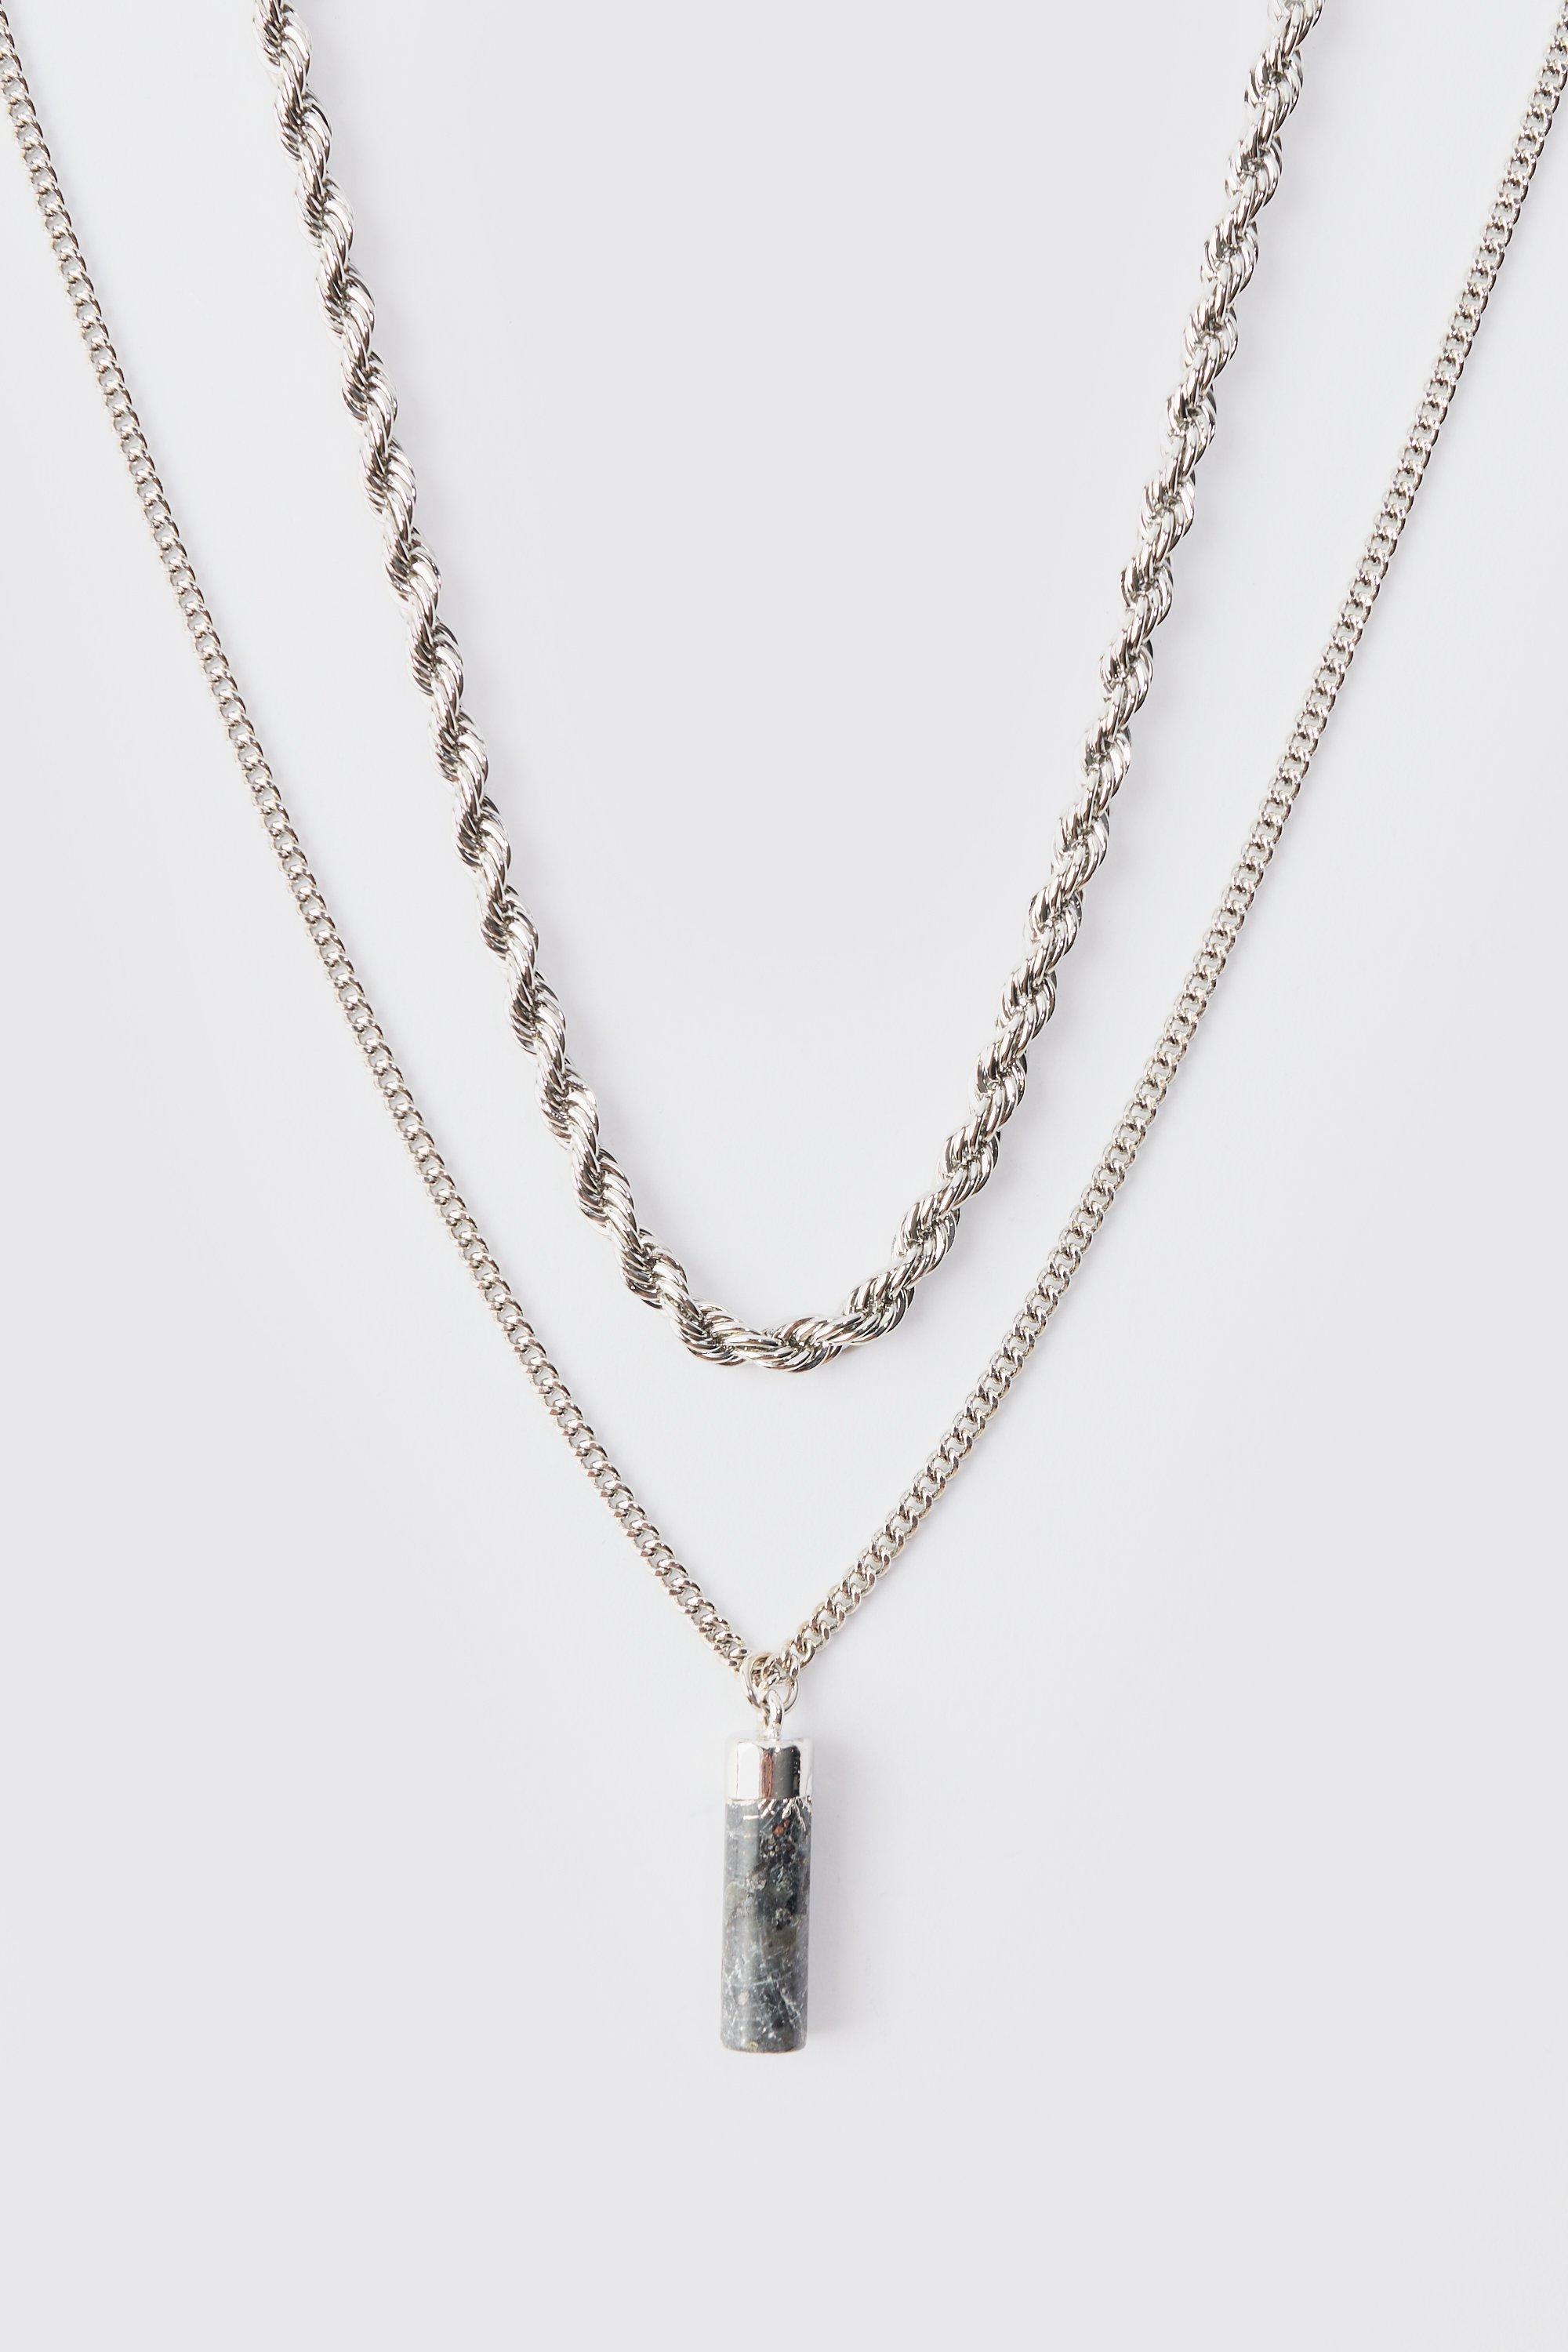 collier superposé à pendentif pierre homme - argent - one size, argent